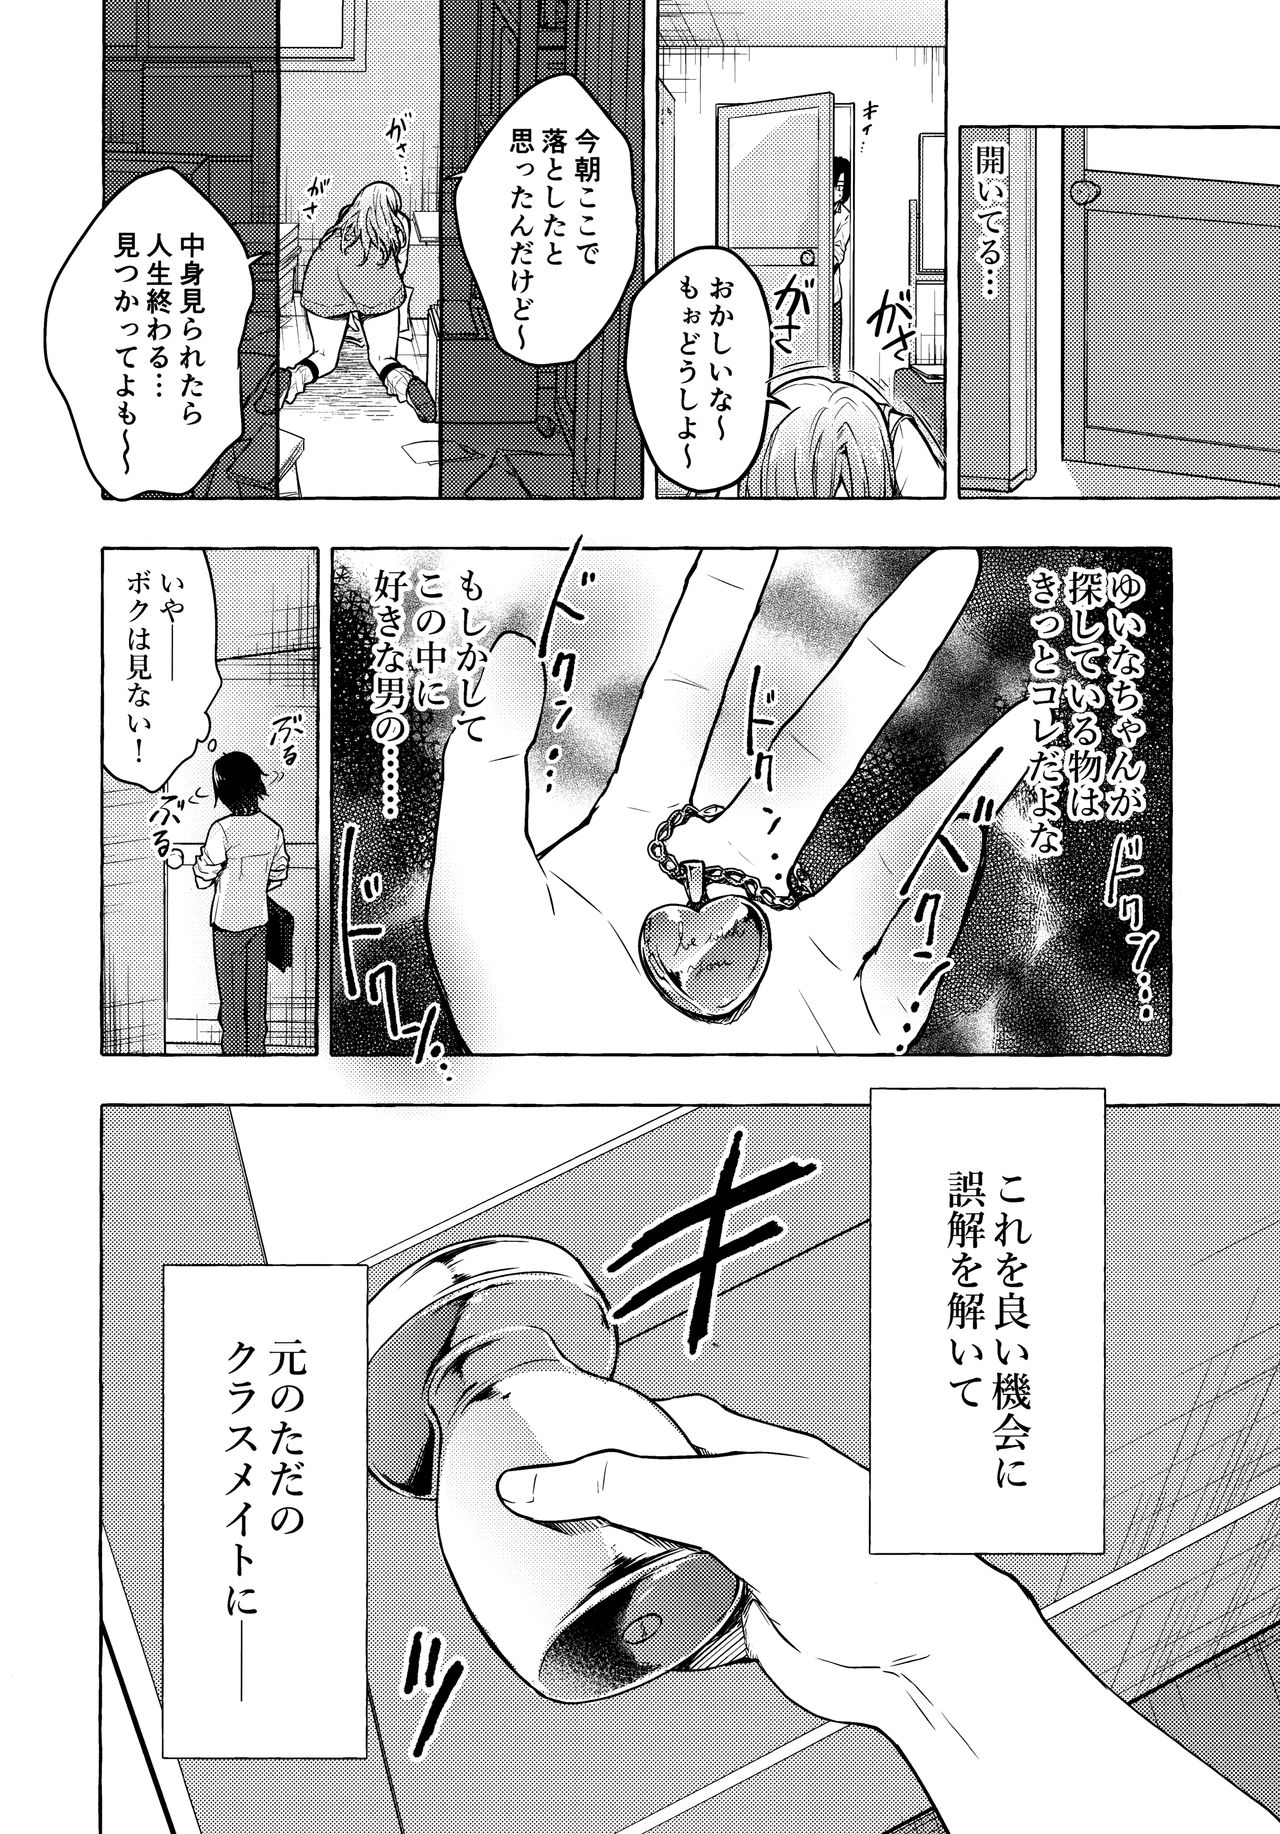 Gal Yuina-chan to Ecchi 2 -Kataomoi no Kanojo ga Boku ni Sekimen!?- | Having Sex with Yuina-chan, the Gyaru 2 -My Secret Crush is Blushing at Me!?- - Foto 9